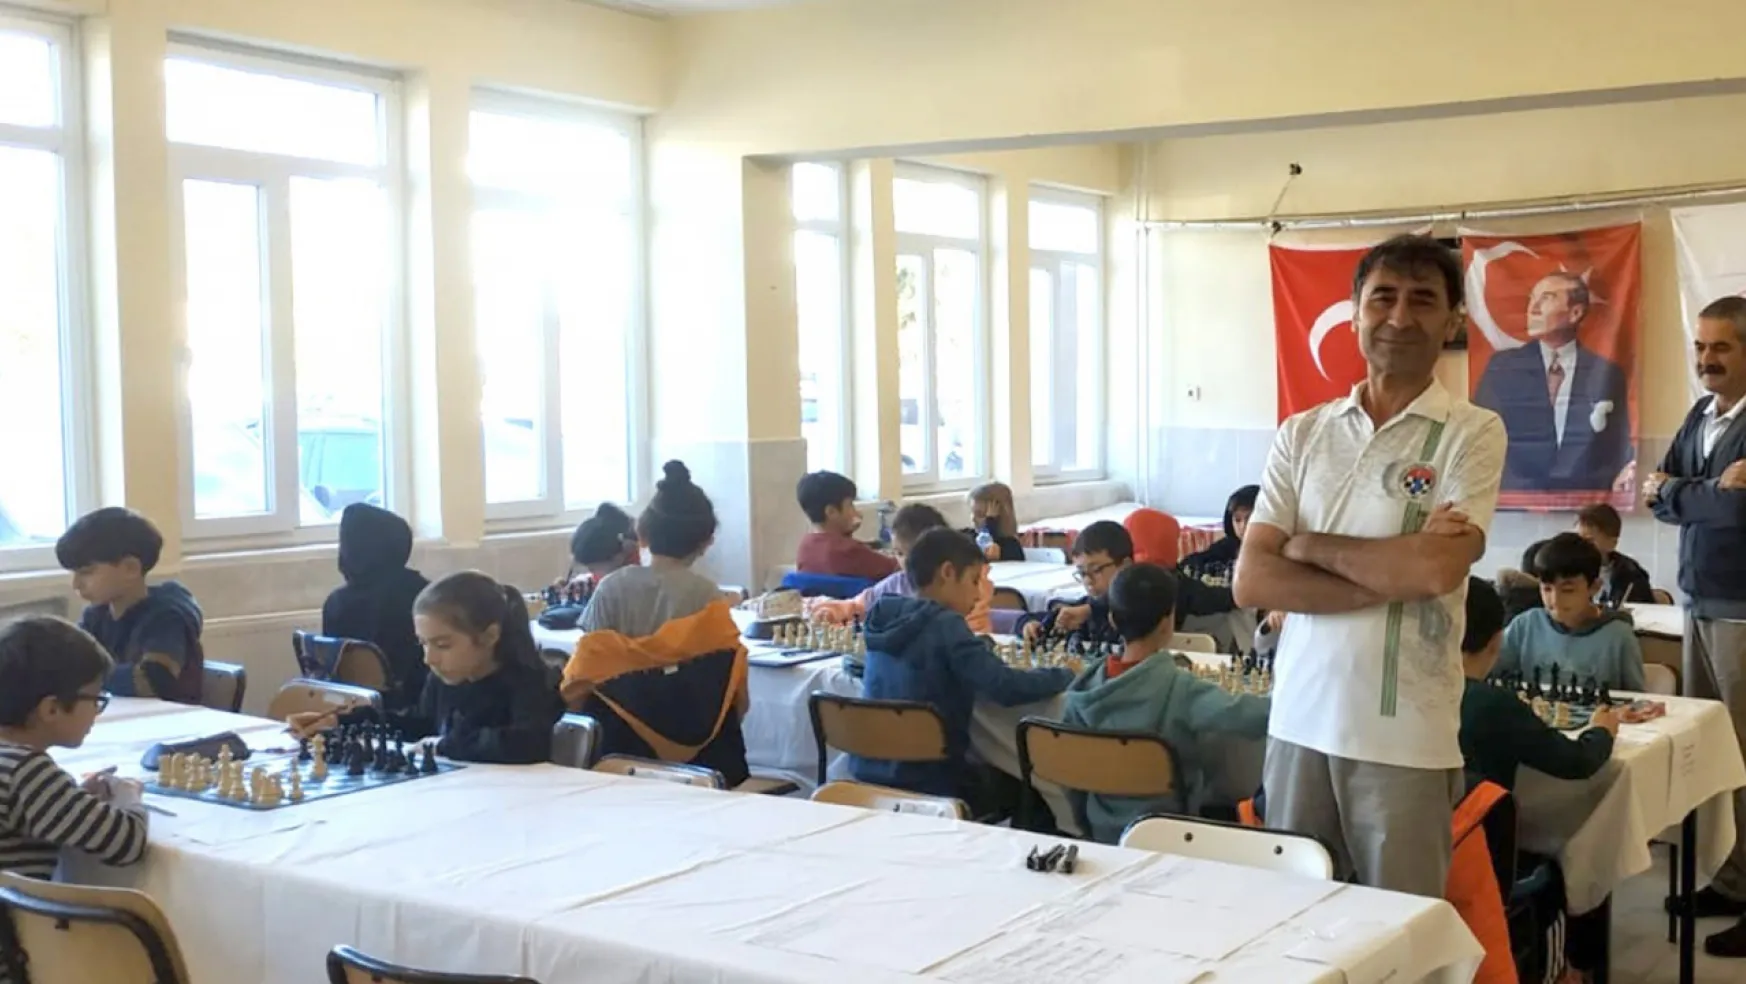 10 Kasım Atatürk'ü Anma Satranç Turnuvası yapıldı